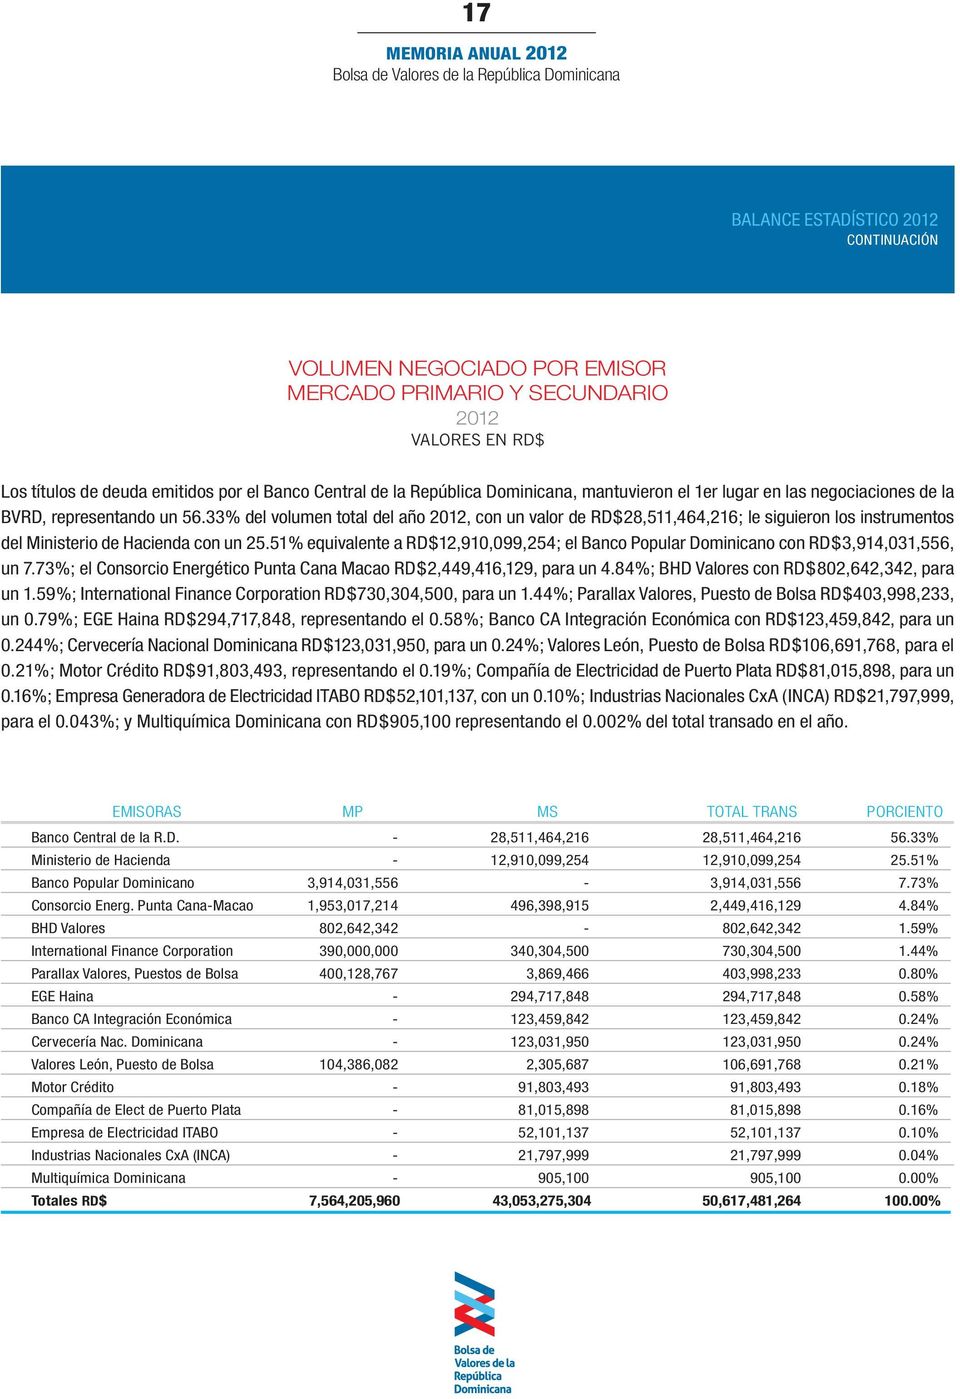 33% del volumen total del año 2012, con un valor de RD$28,511,464,216; le siguieron los instrumentos del Ministerio de Hacienda con un 25.